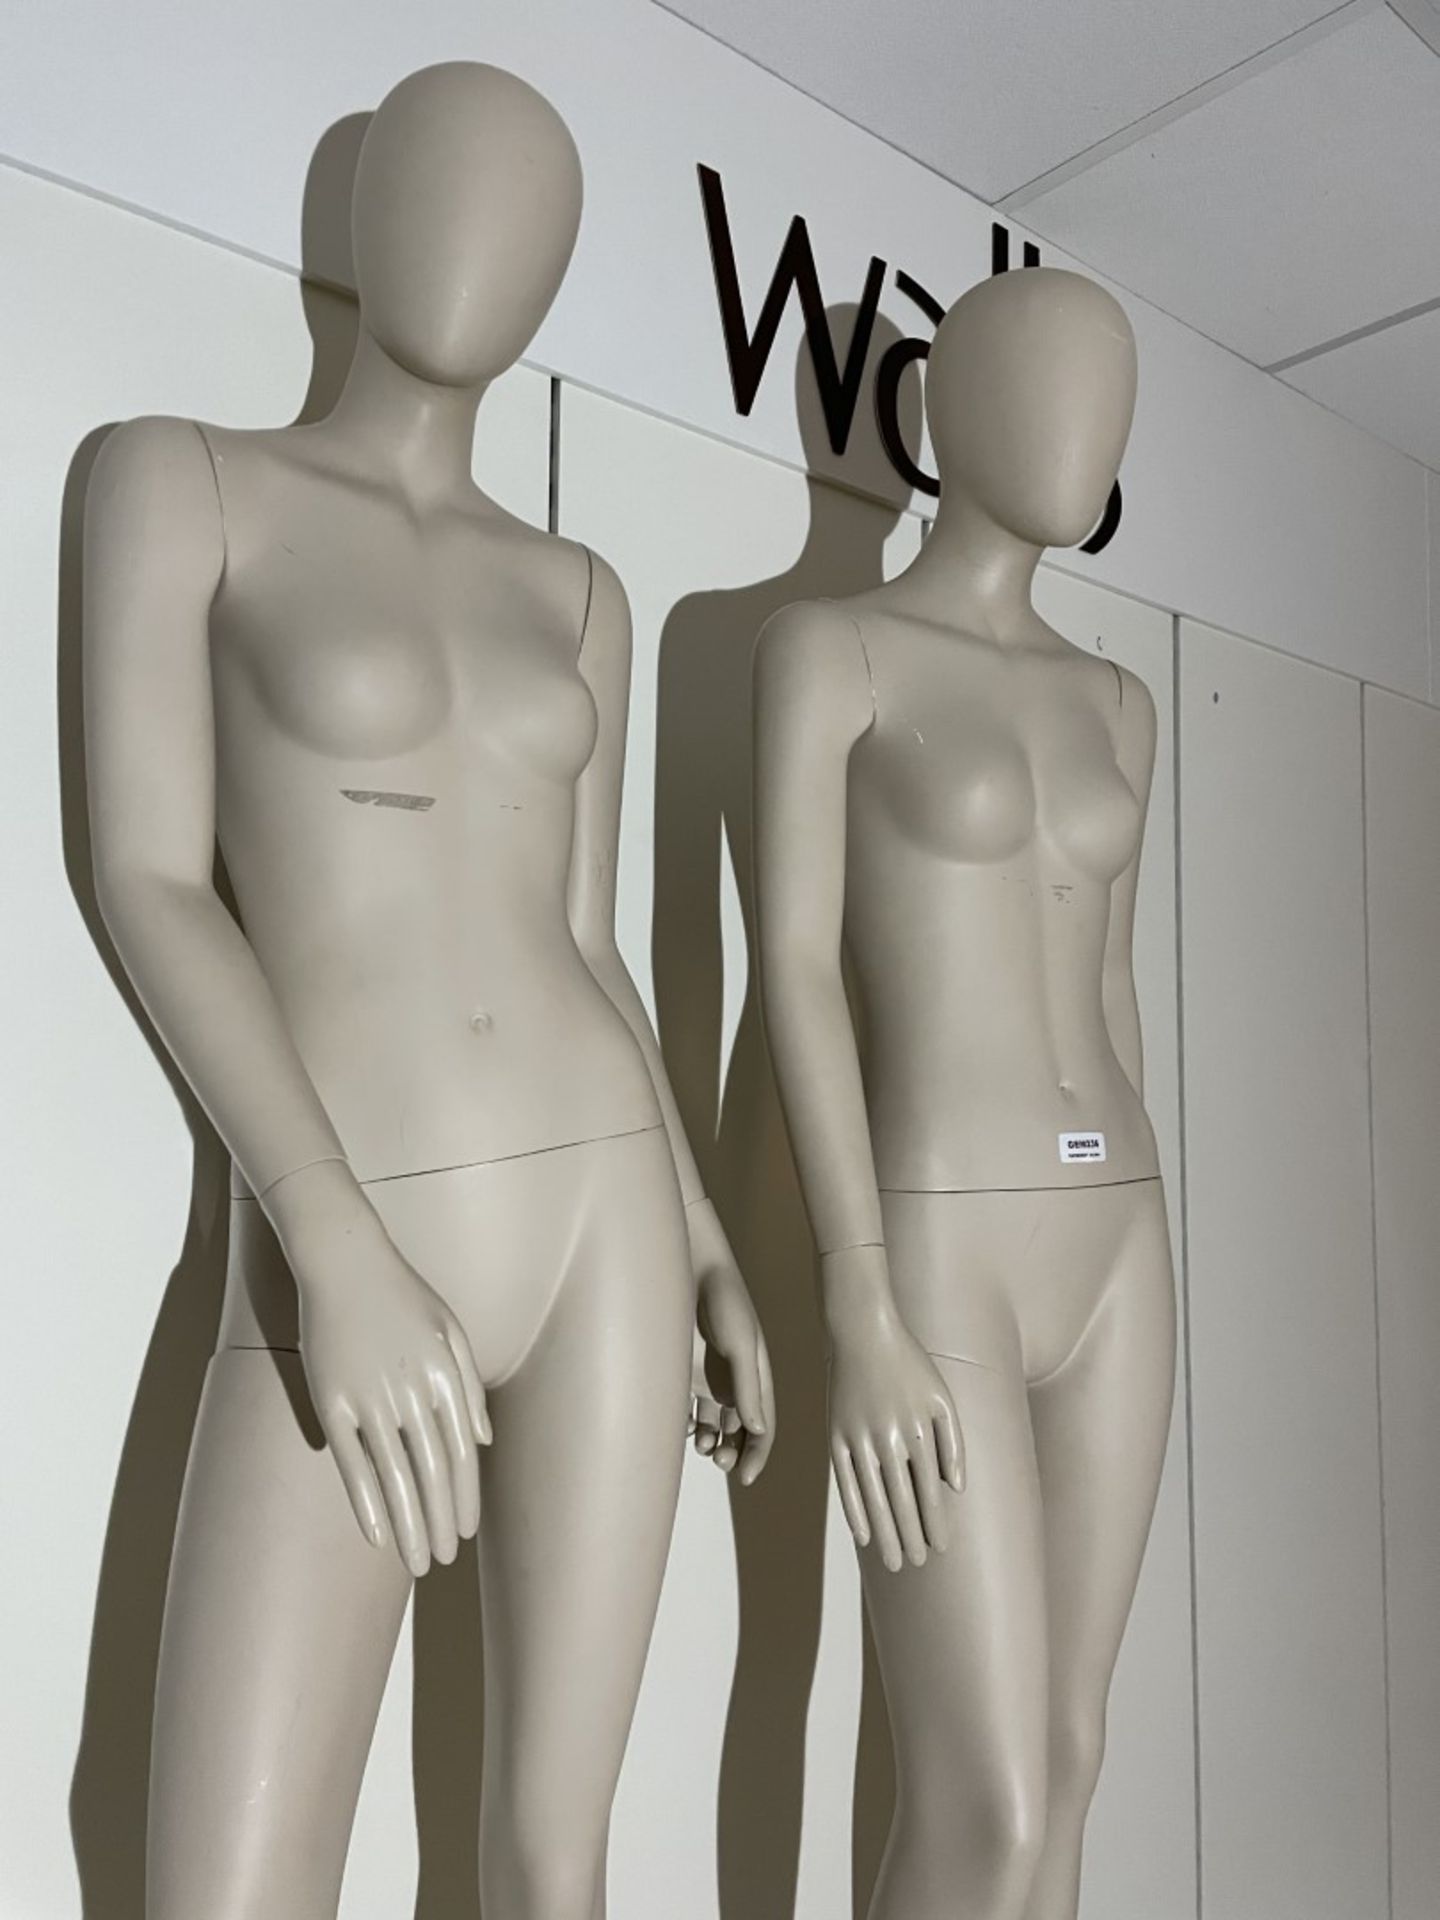 2 x Full Size Female Mannequins on Pedestal Plinth Stands - CL670 - Ref: GEM236 - Location: - Image 6 of 11